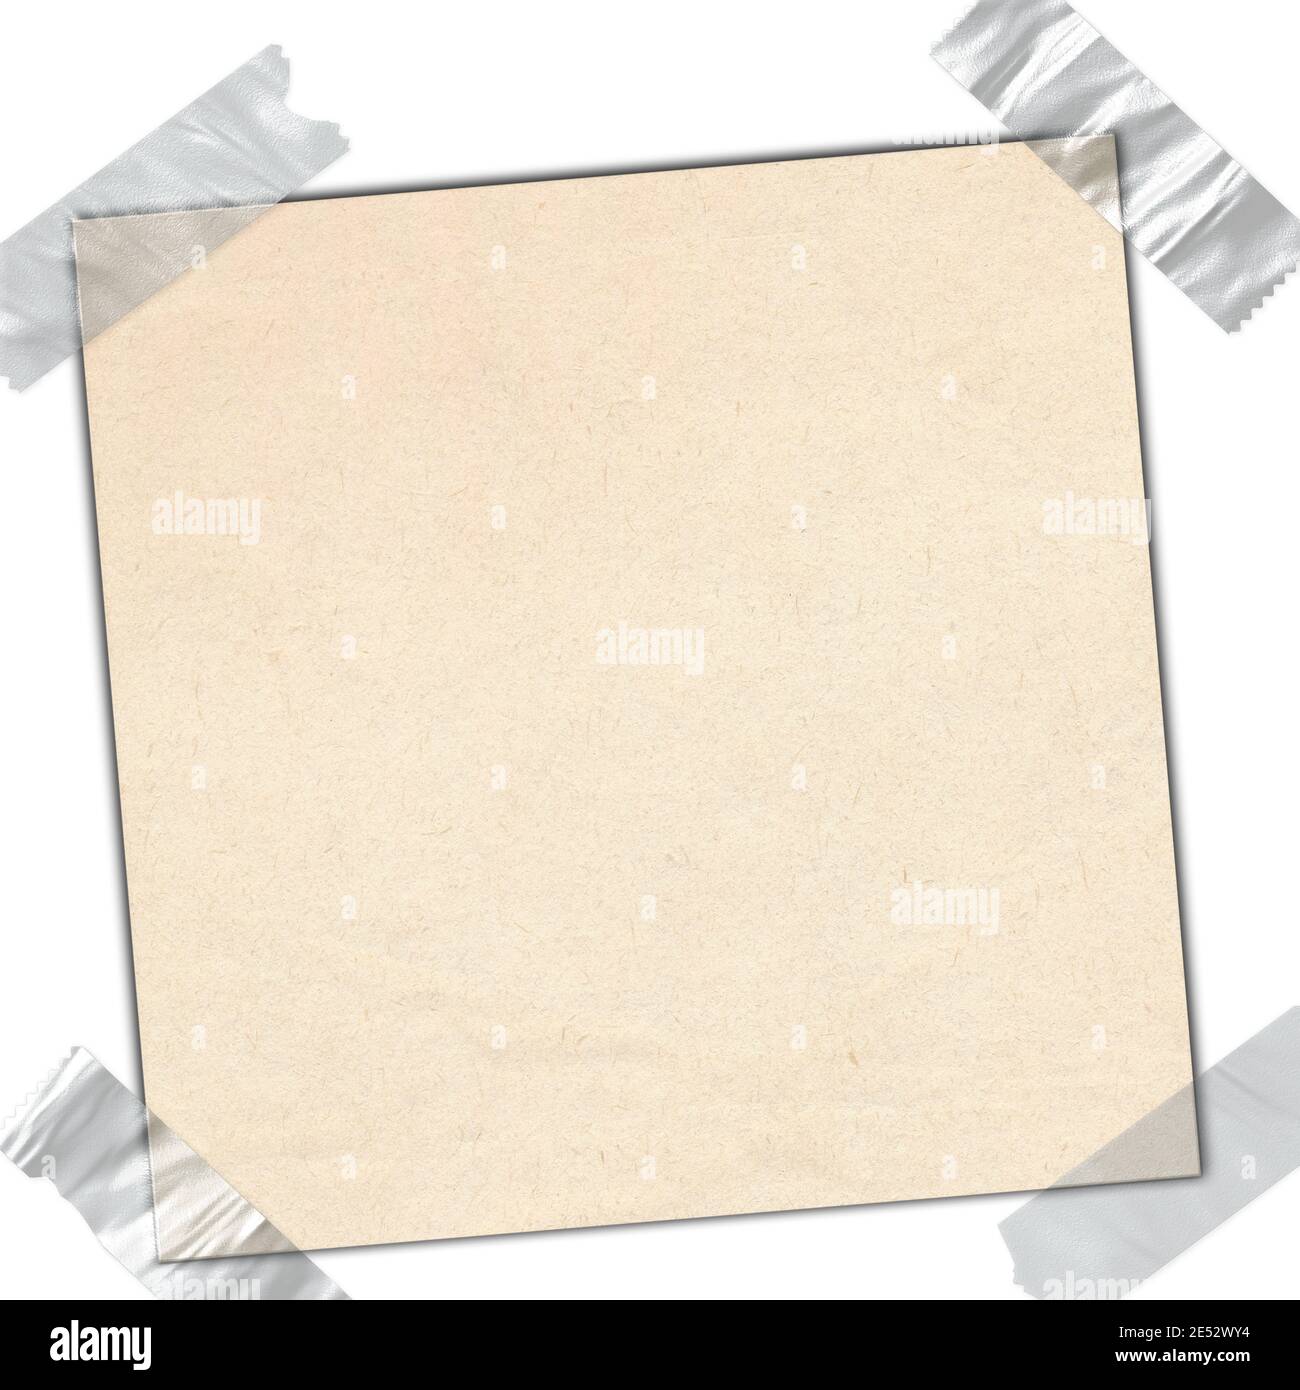 Nastri adesivi in cartone sigillati su sfondo bianco Foto Stock